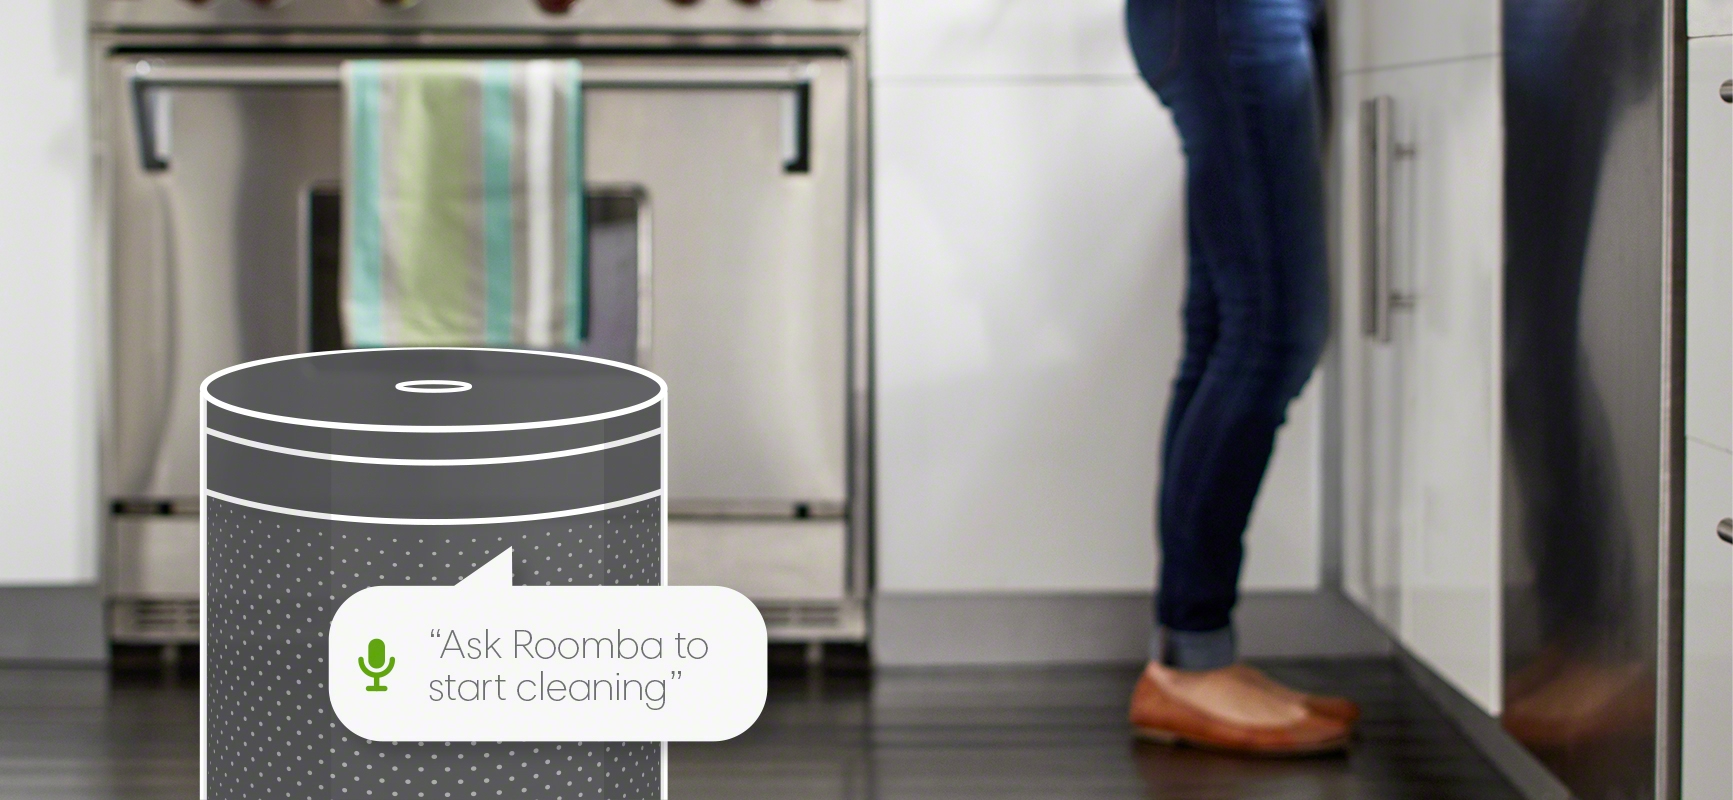 iRobot Roomba serii 600 współpraca z asytentami głosowymi